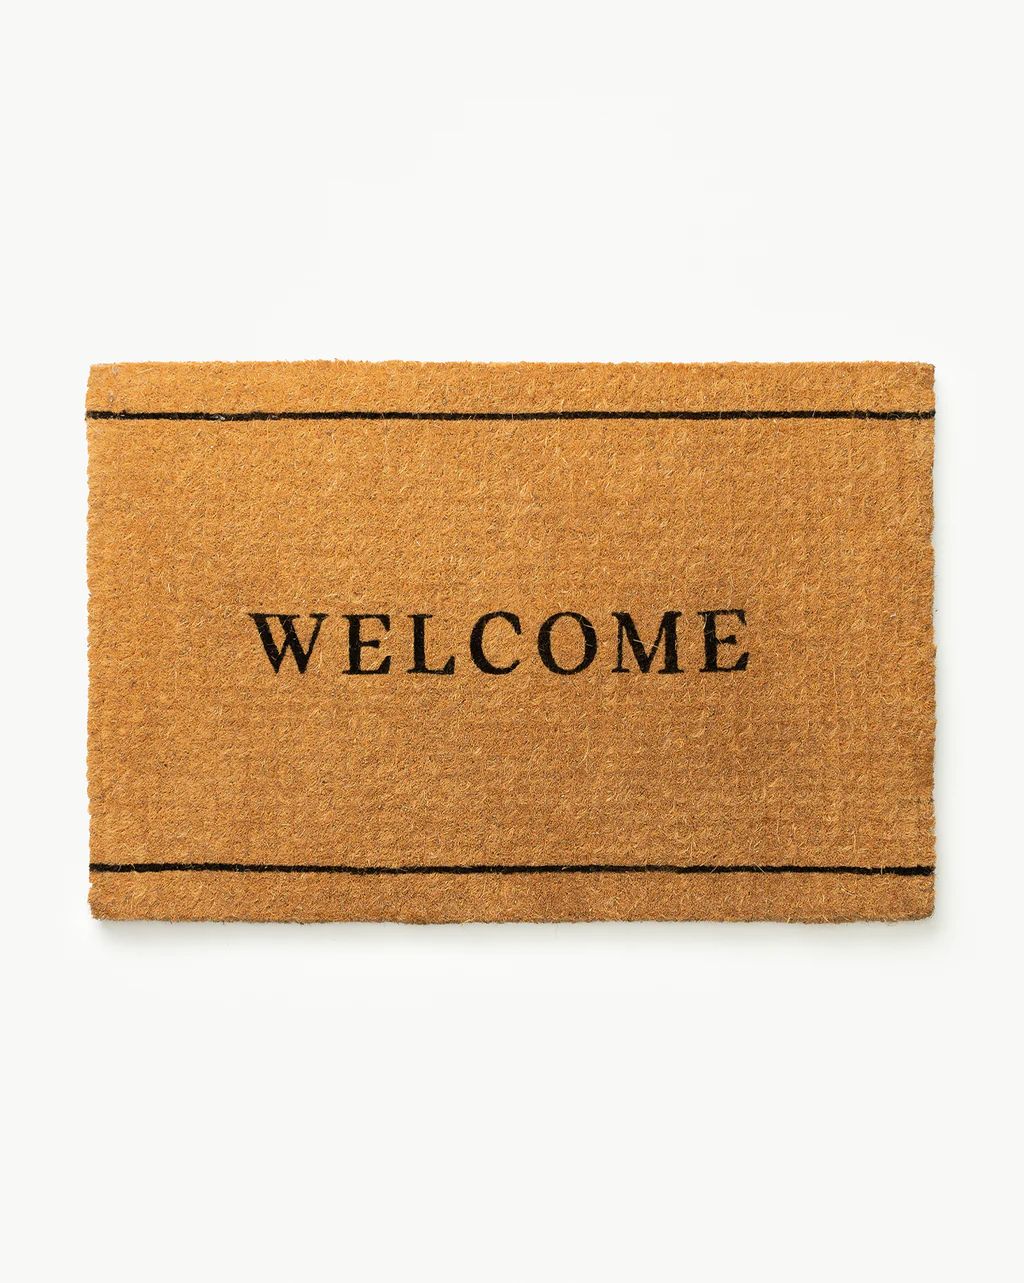 Welcome Border Doormat | McGee & Co.